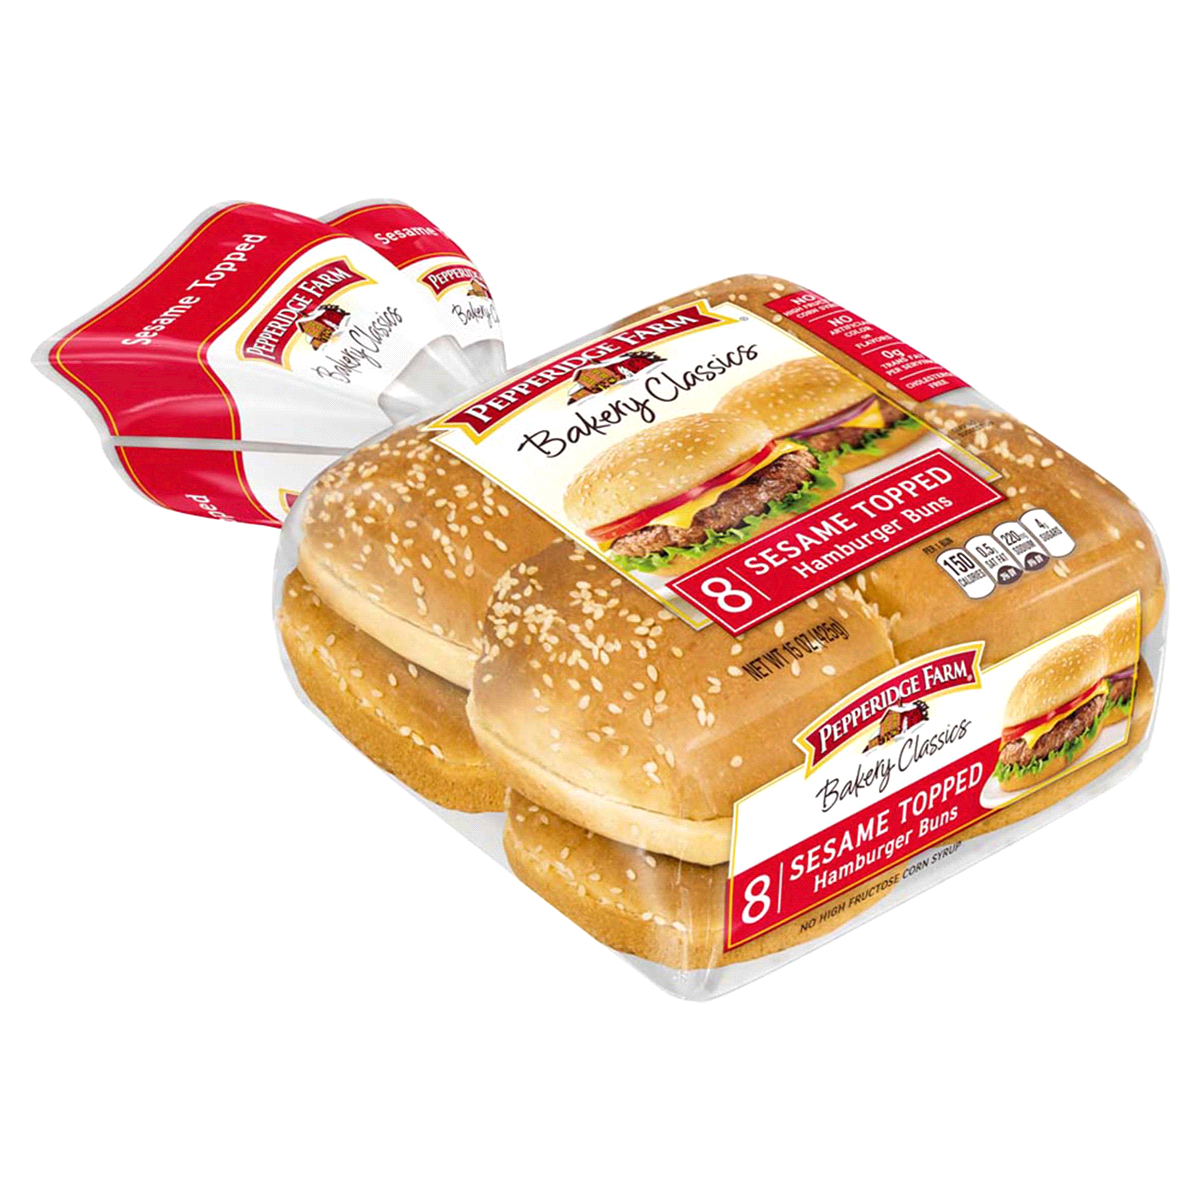 slide 36 of 125, Pepperidge Farm Sesame Topped Hamburger Buns, 8-Pack Bag, 15 oz